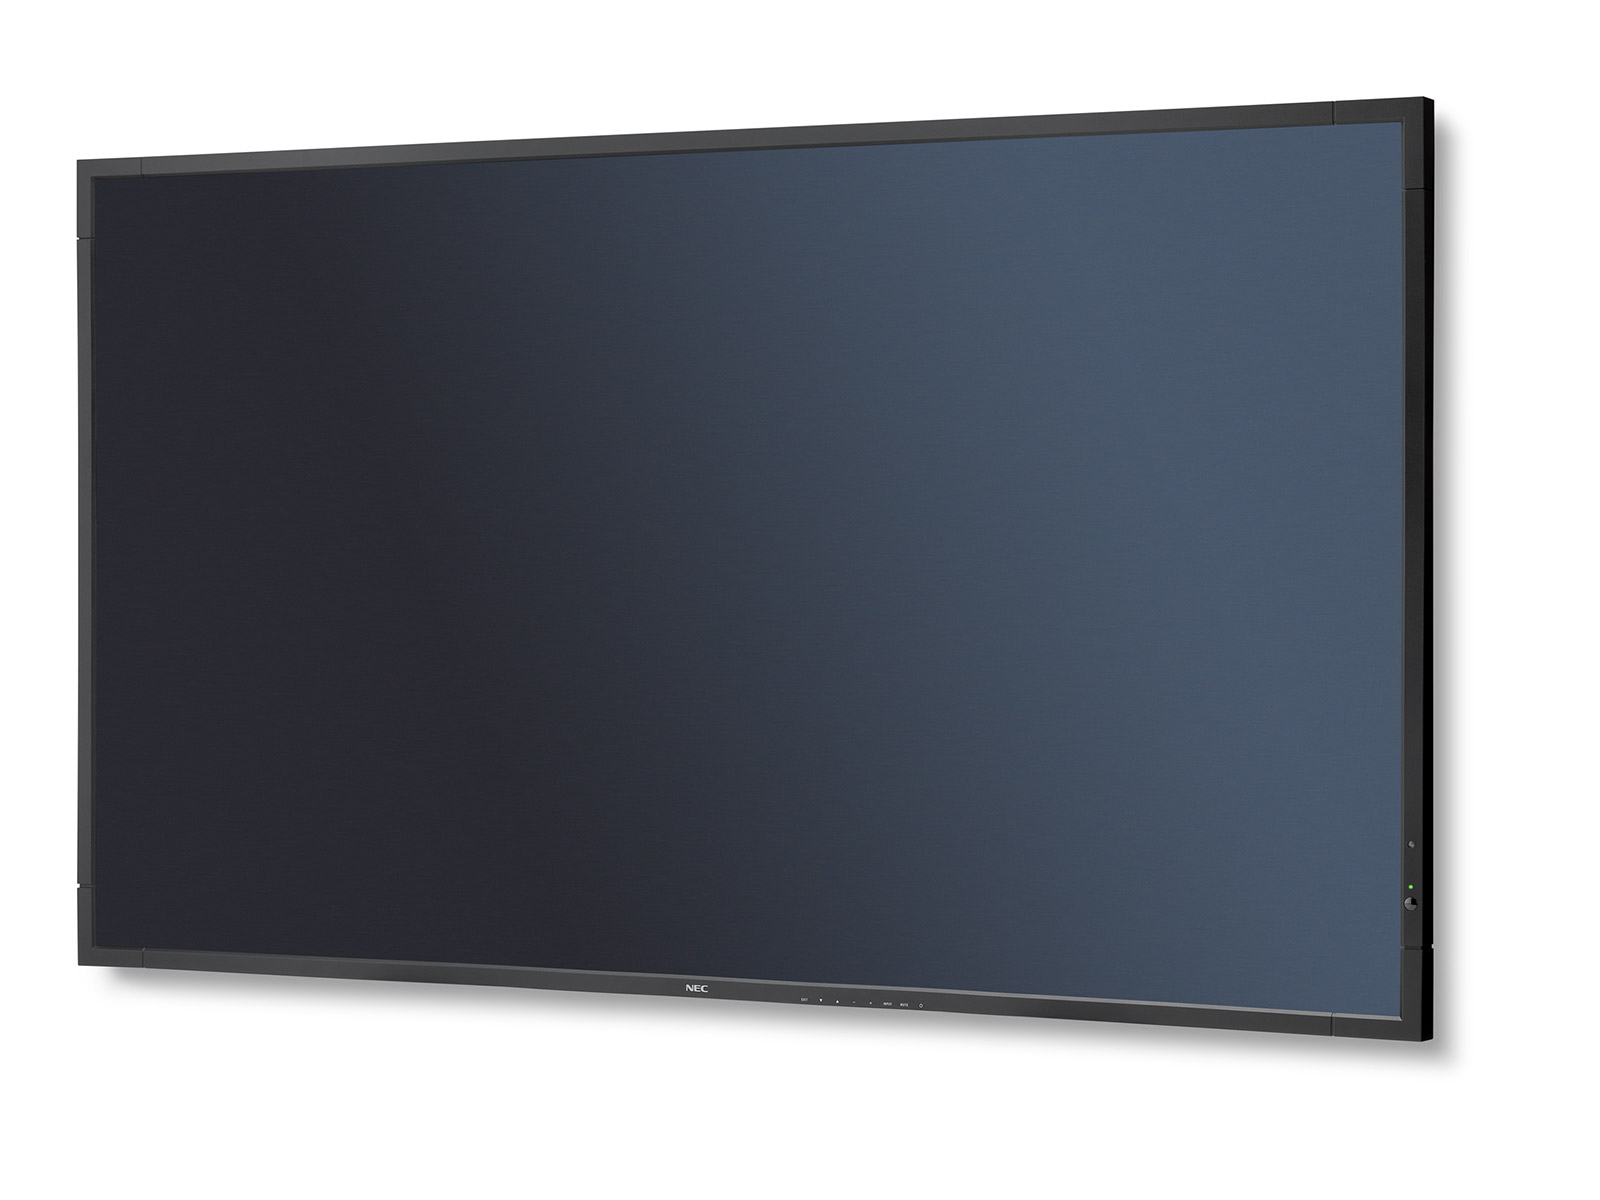 NEC MultiSync® V423 - Sharp NEC Display Solutions –...